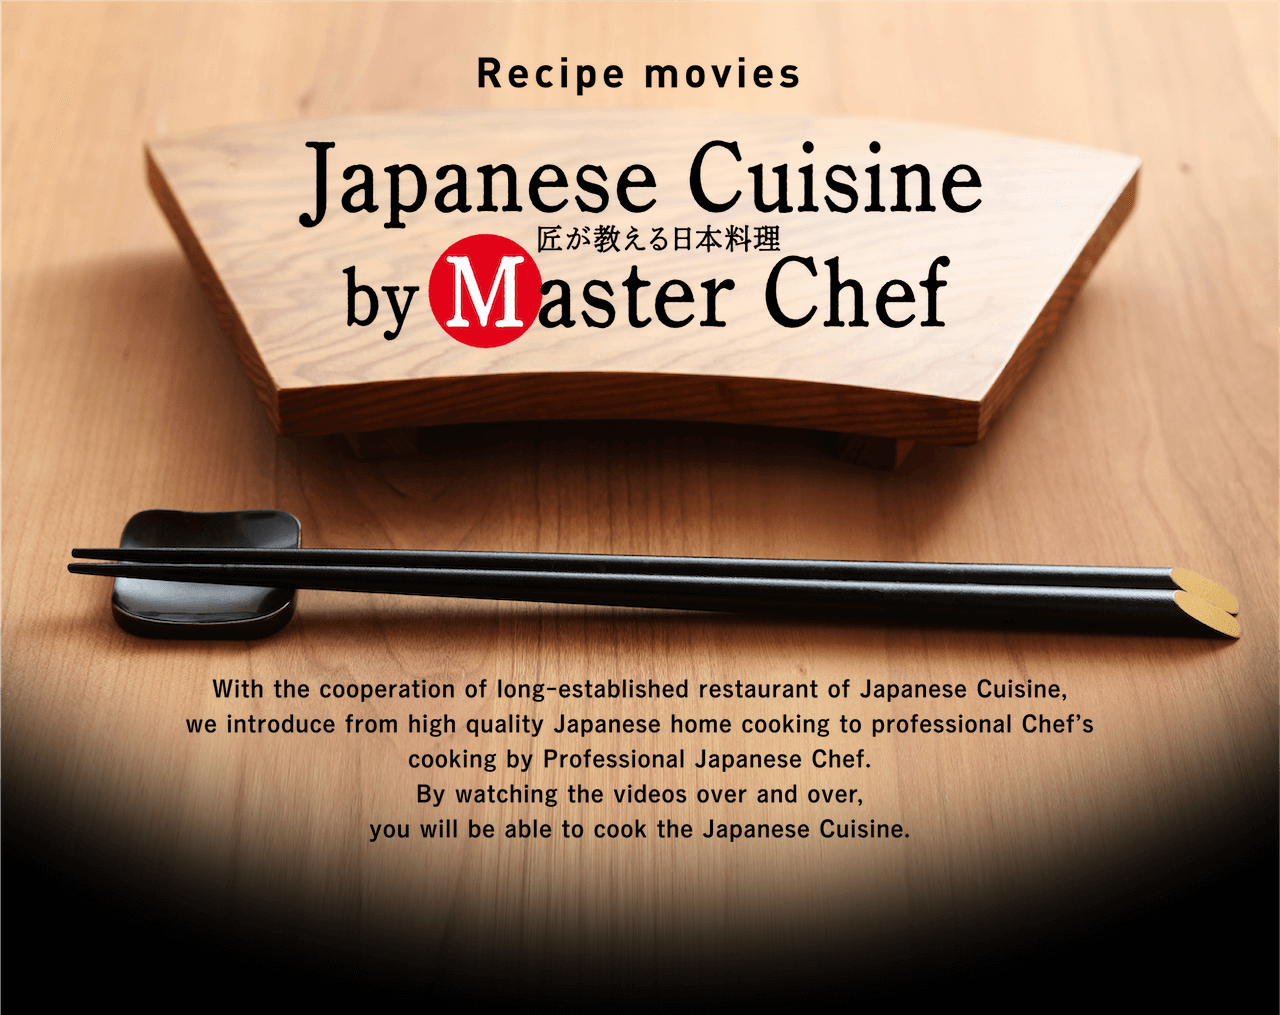 https://japanese-cuisine.com/static/media/recipe_banner_en.5c38369d.png